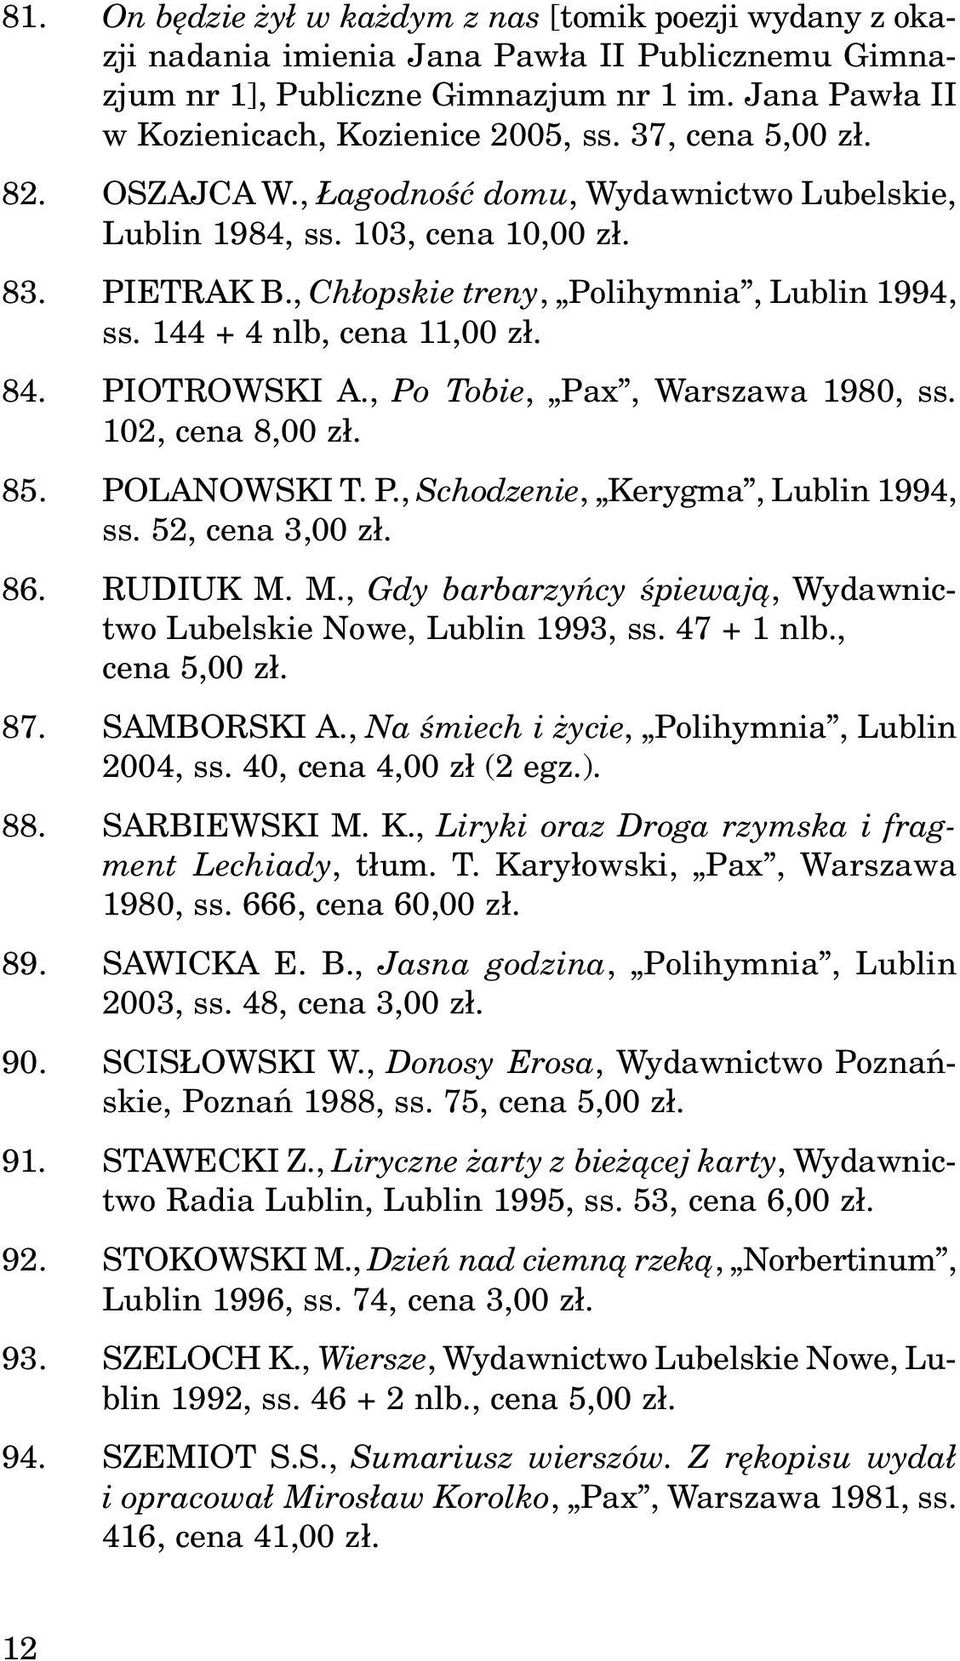 84. PIOTROWSKI A., Po Tobie, Pax, Warszawa 1980, ss. 102, cena 8,00 z³. 85. POLANOWSKI T. P., Schodzenie, Kerygma, Lublin 1994, ss. 52, cena 3,00 z³. 86. RUDIUK M.